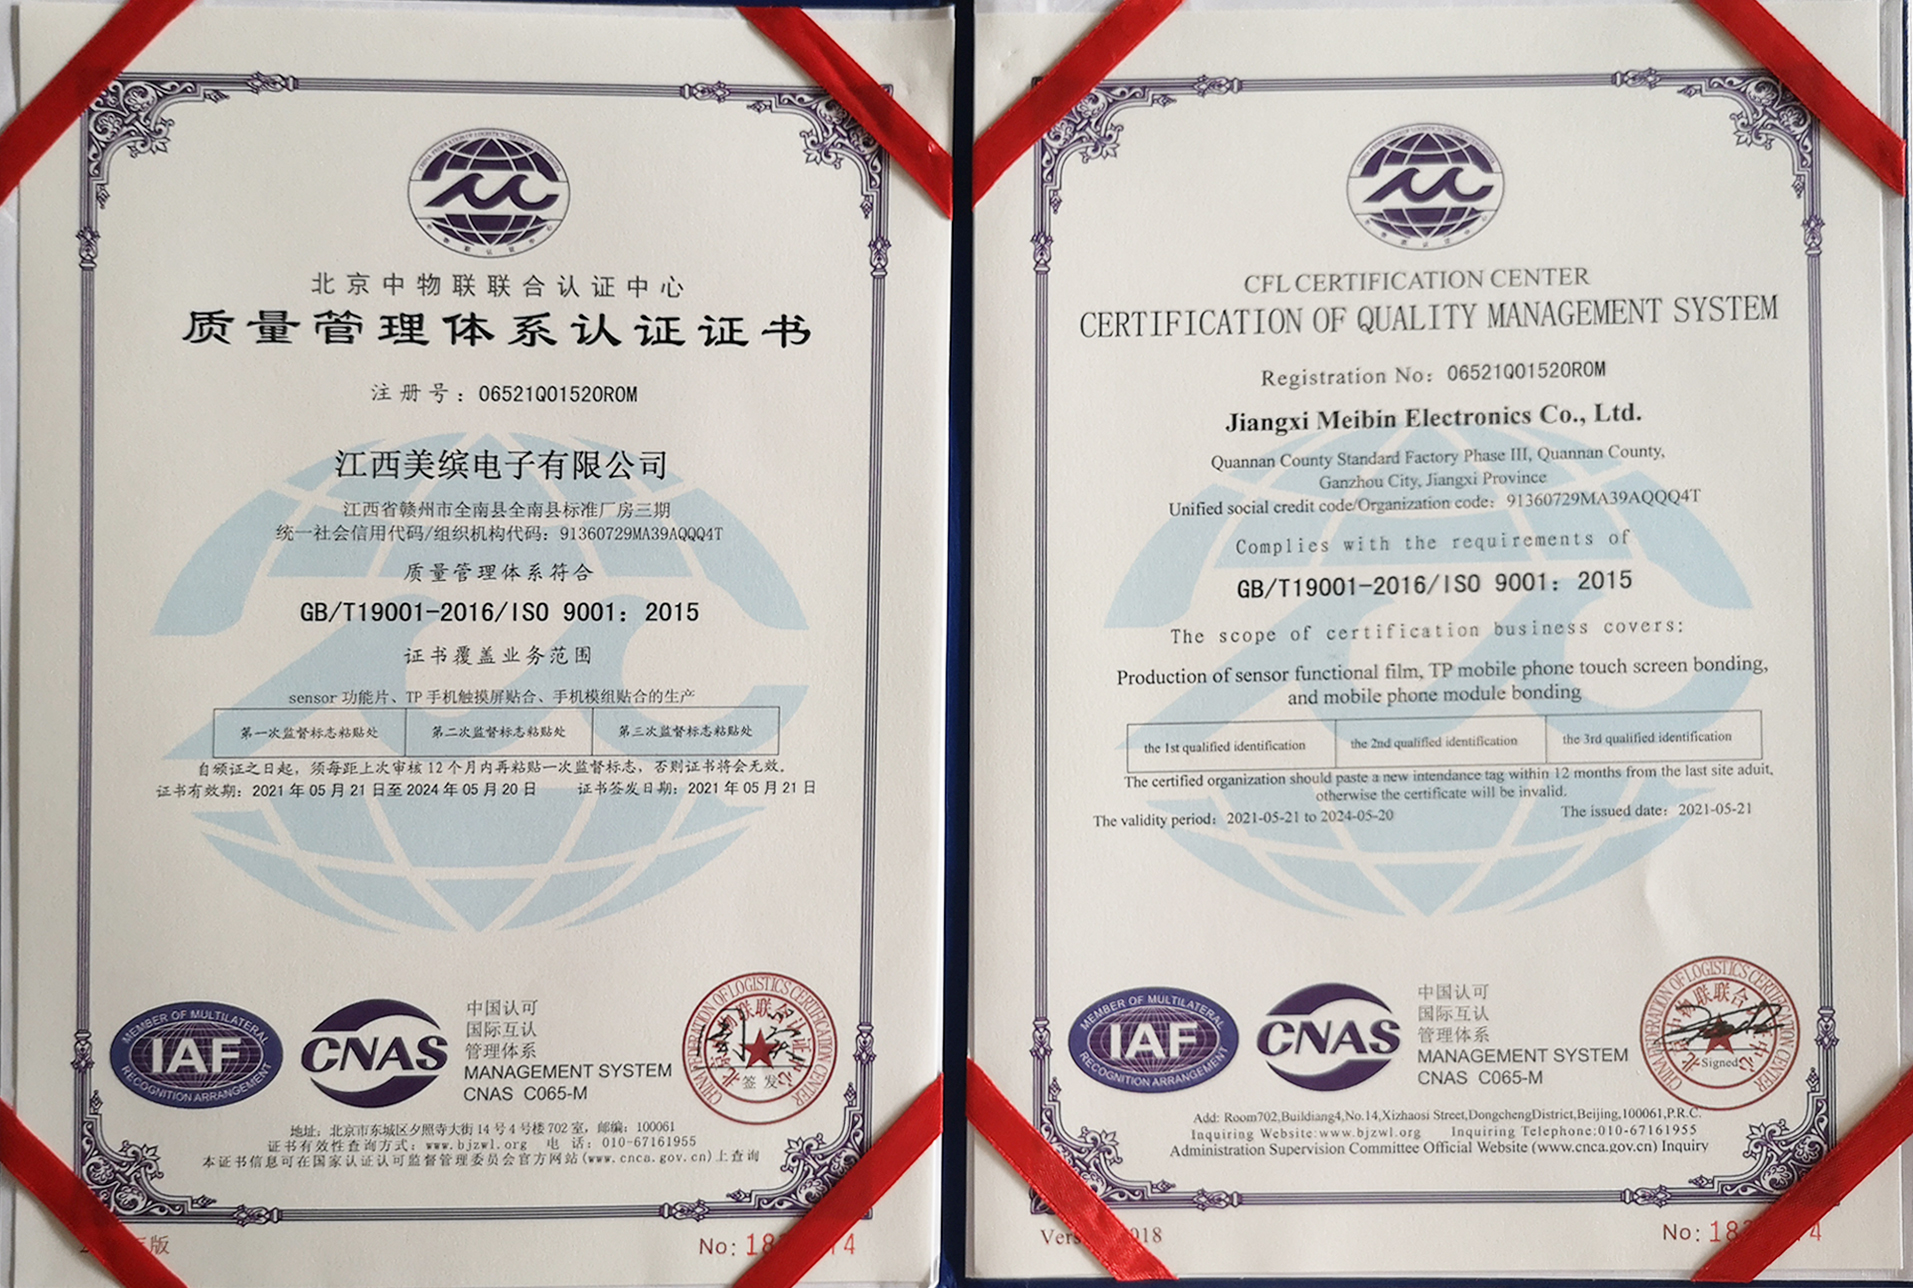 荣誉资质 公司通过ISO9001质量体系认证